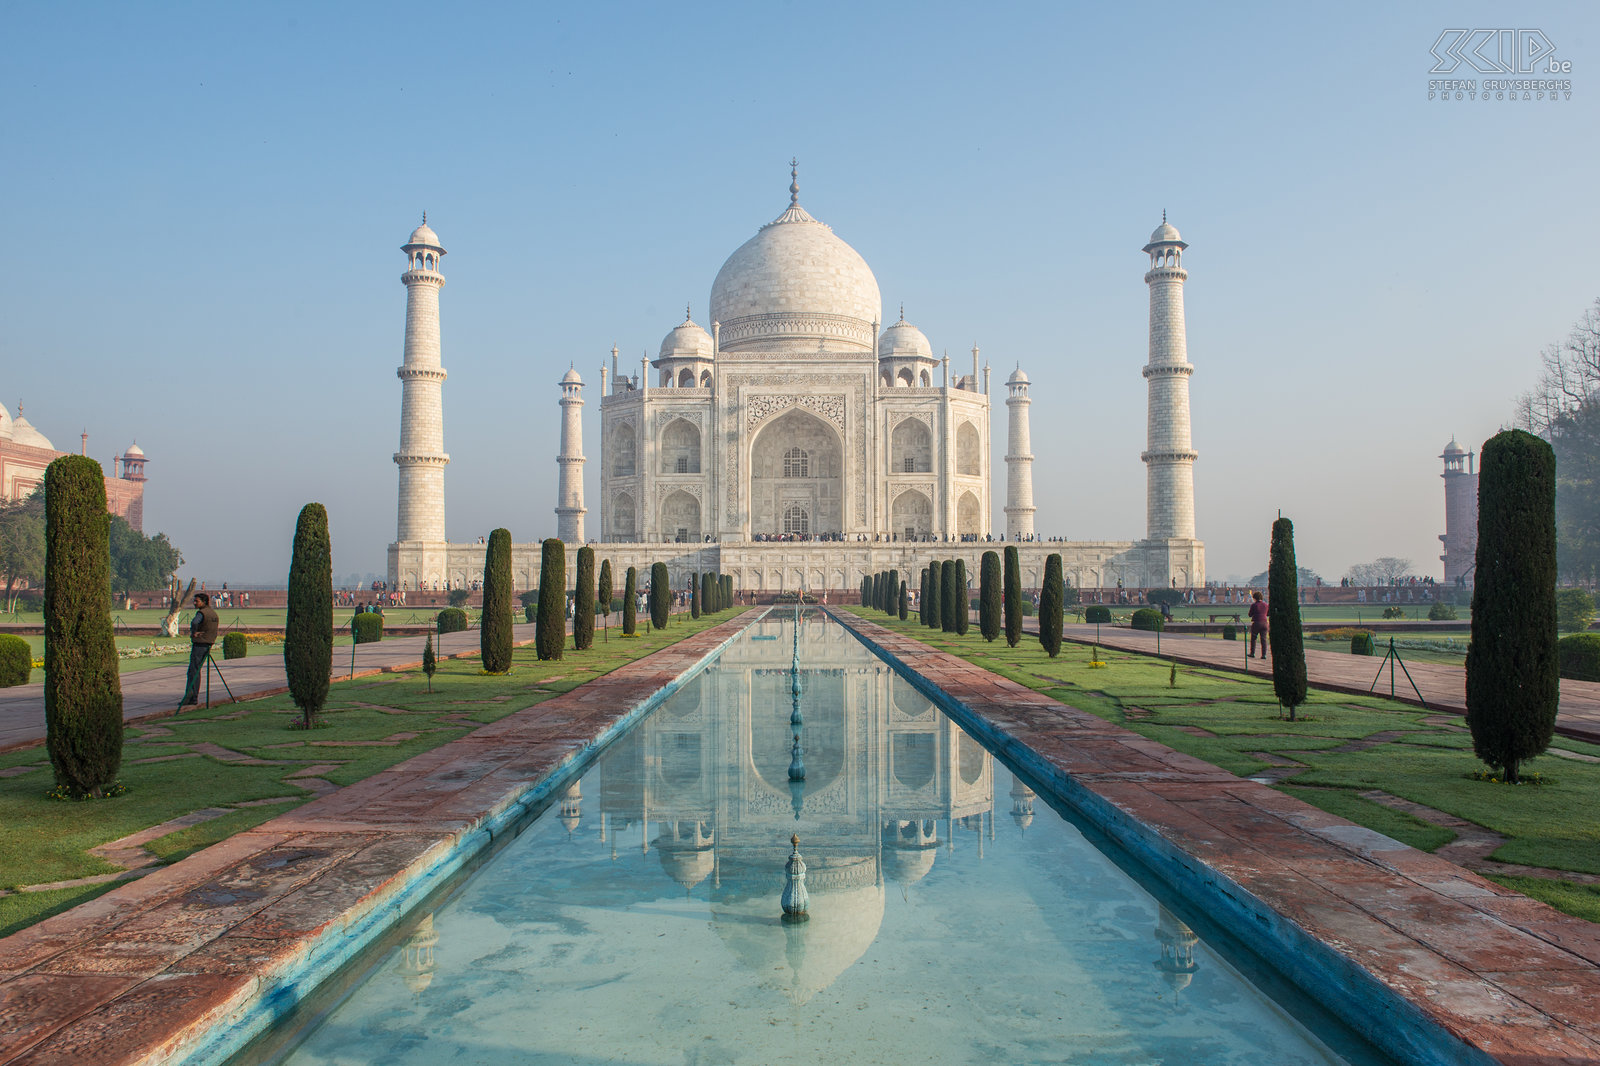 Agra - Taj Mahal De traditionele foto voor de Taj Mahal. De Taj Mahal is 58m hoog en 56m breed en staat op een 10.000m² groot marmeren platform. Voor het gebouw bevindt zich een uitgestrekte tuin, waarin zich een langgerekt waterbekken bevindt. Stefan Cruysberghs